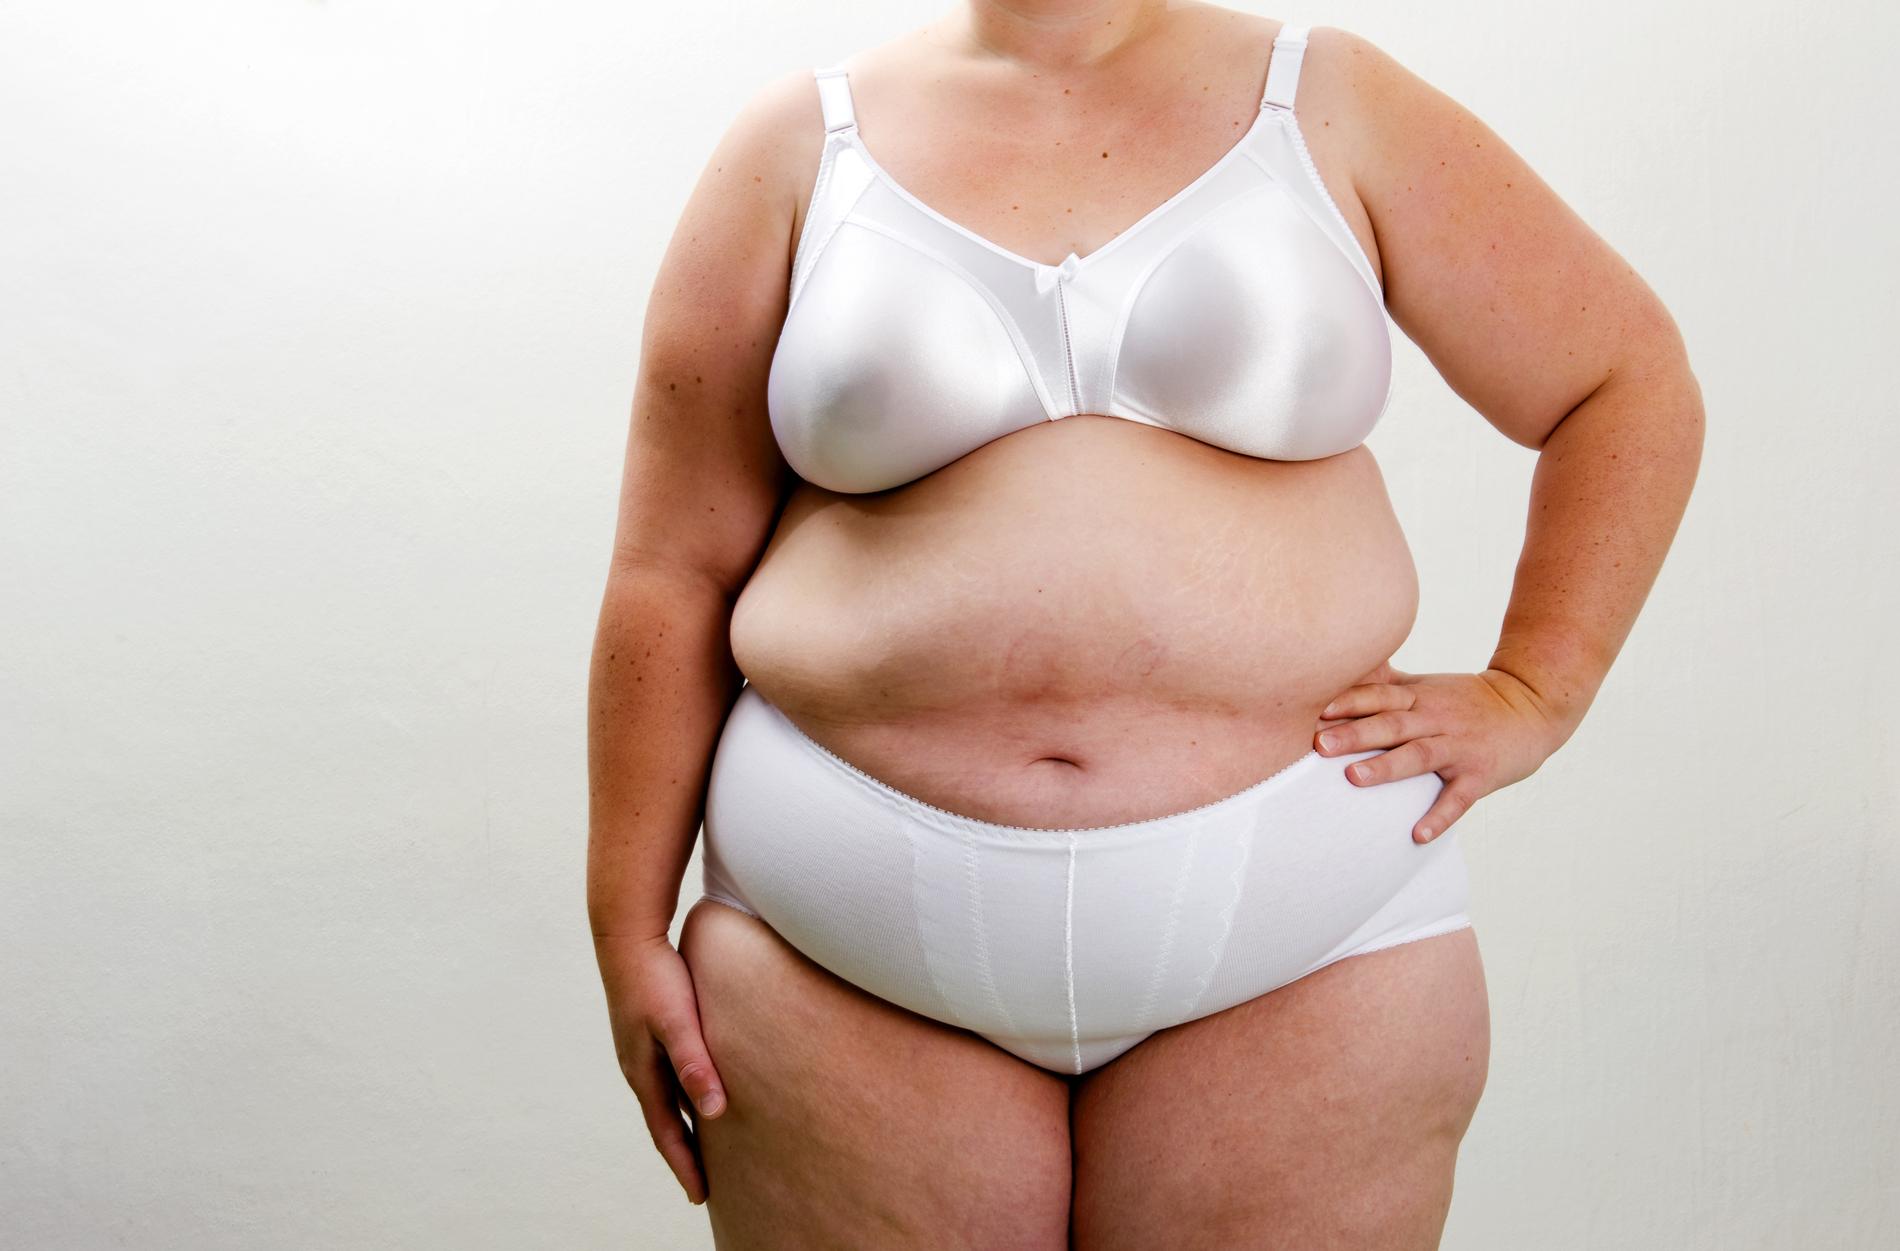 ”Risken för hjärtkärlsjukdom är som högst om man har mycket fett i buken”, säger Torgny Karlsson, statistiker och forskare.